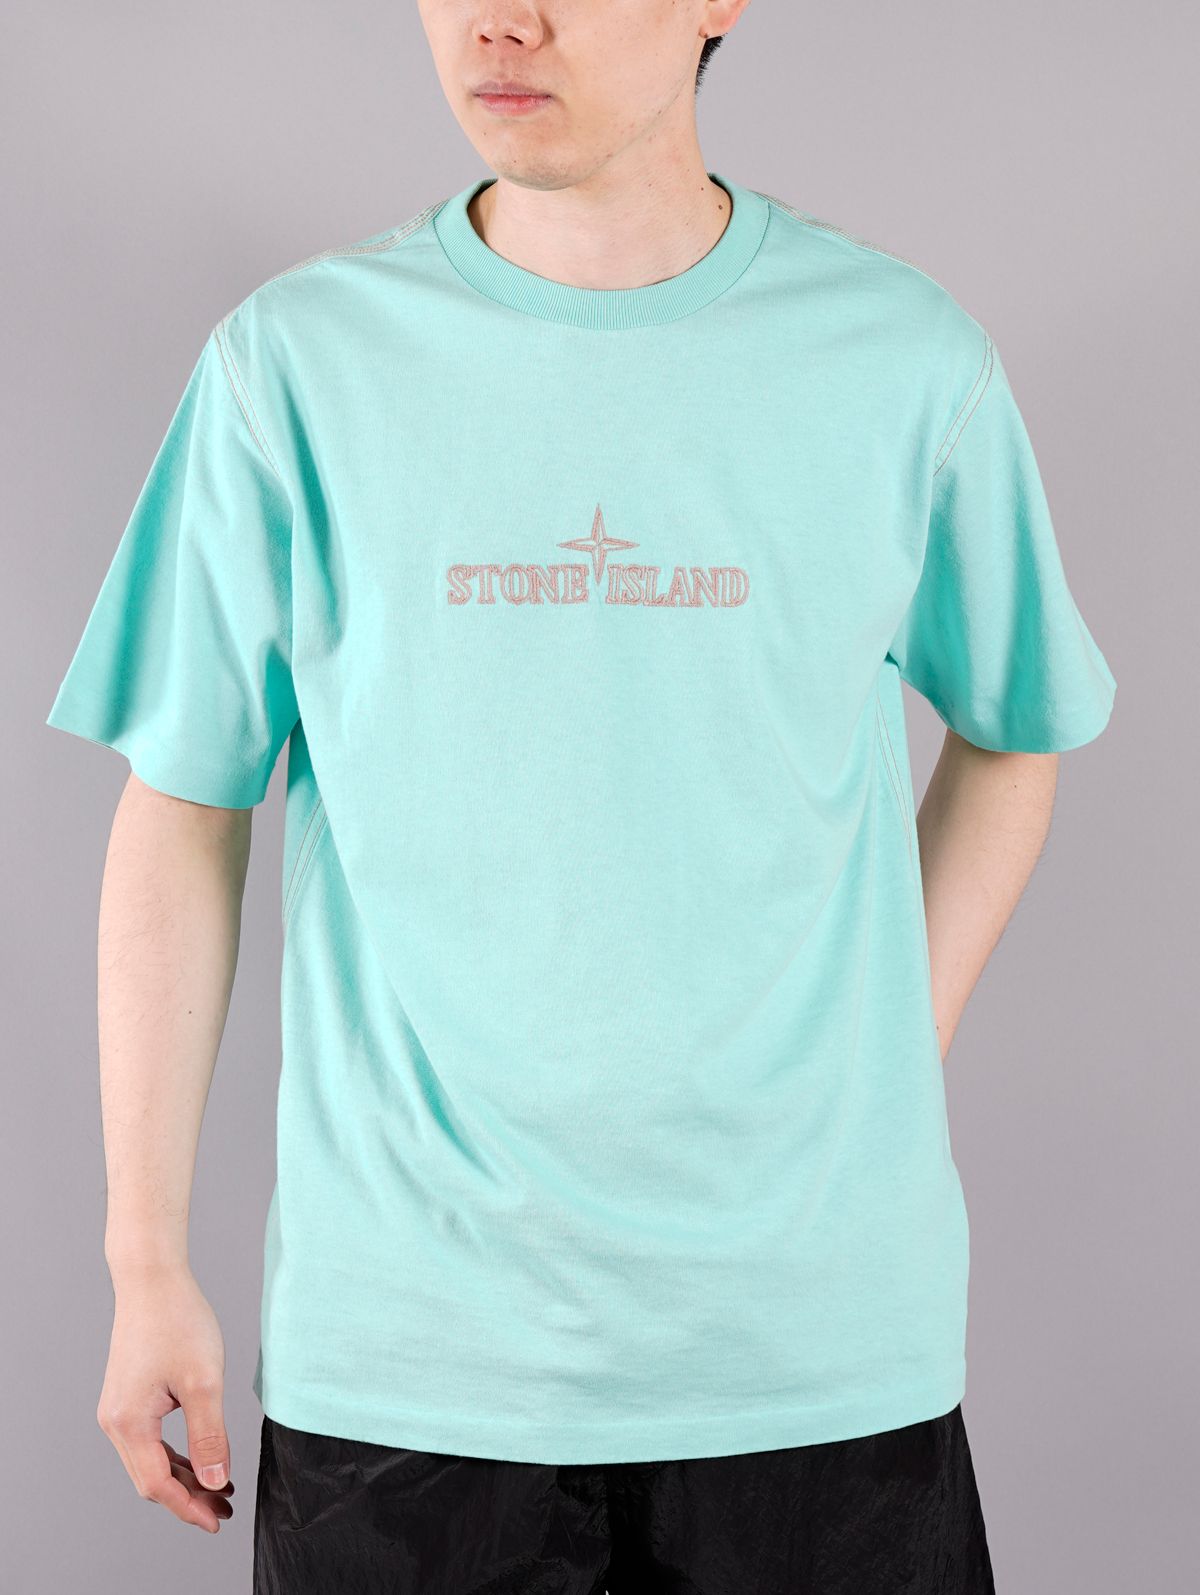 STONE ISLAND - ラスト1点 / T-SHIRT / Tシャツ (ホワイト) | Confidence